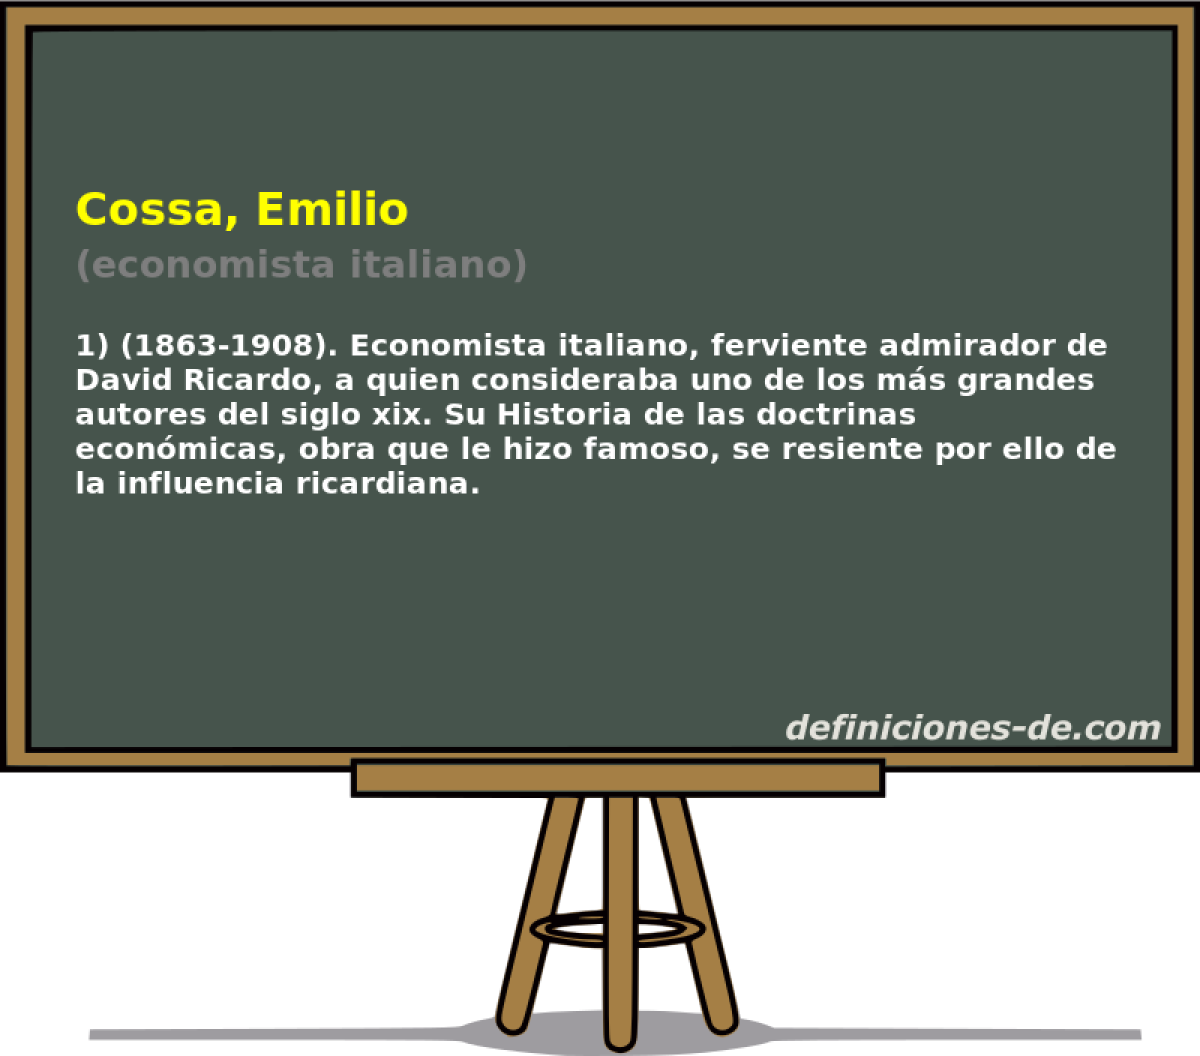 Cossa, Emilio (economista italiano)